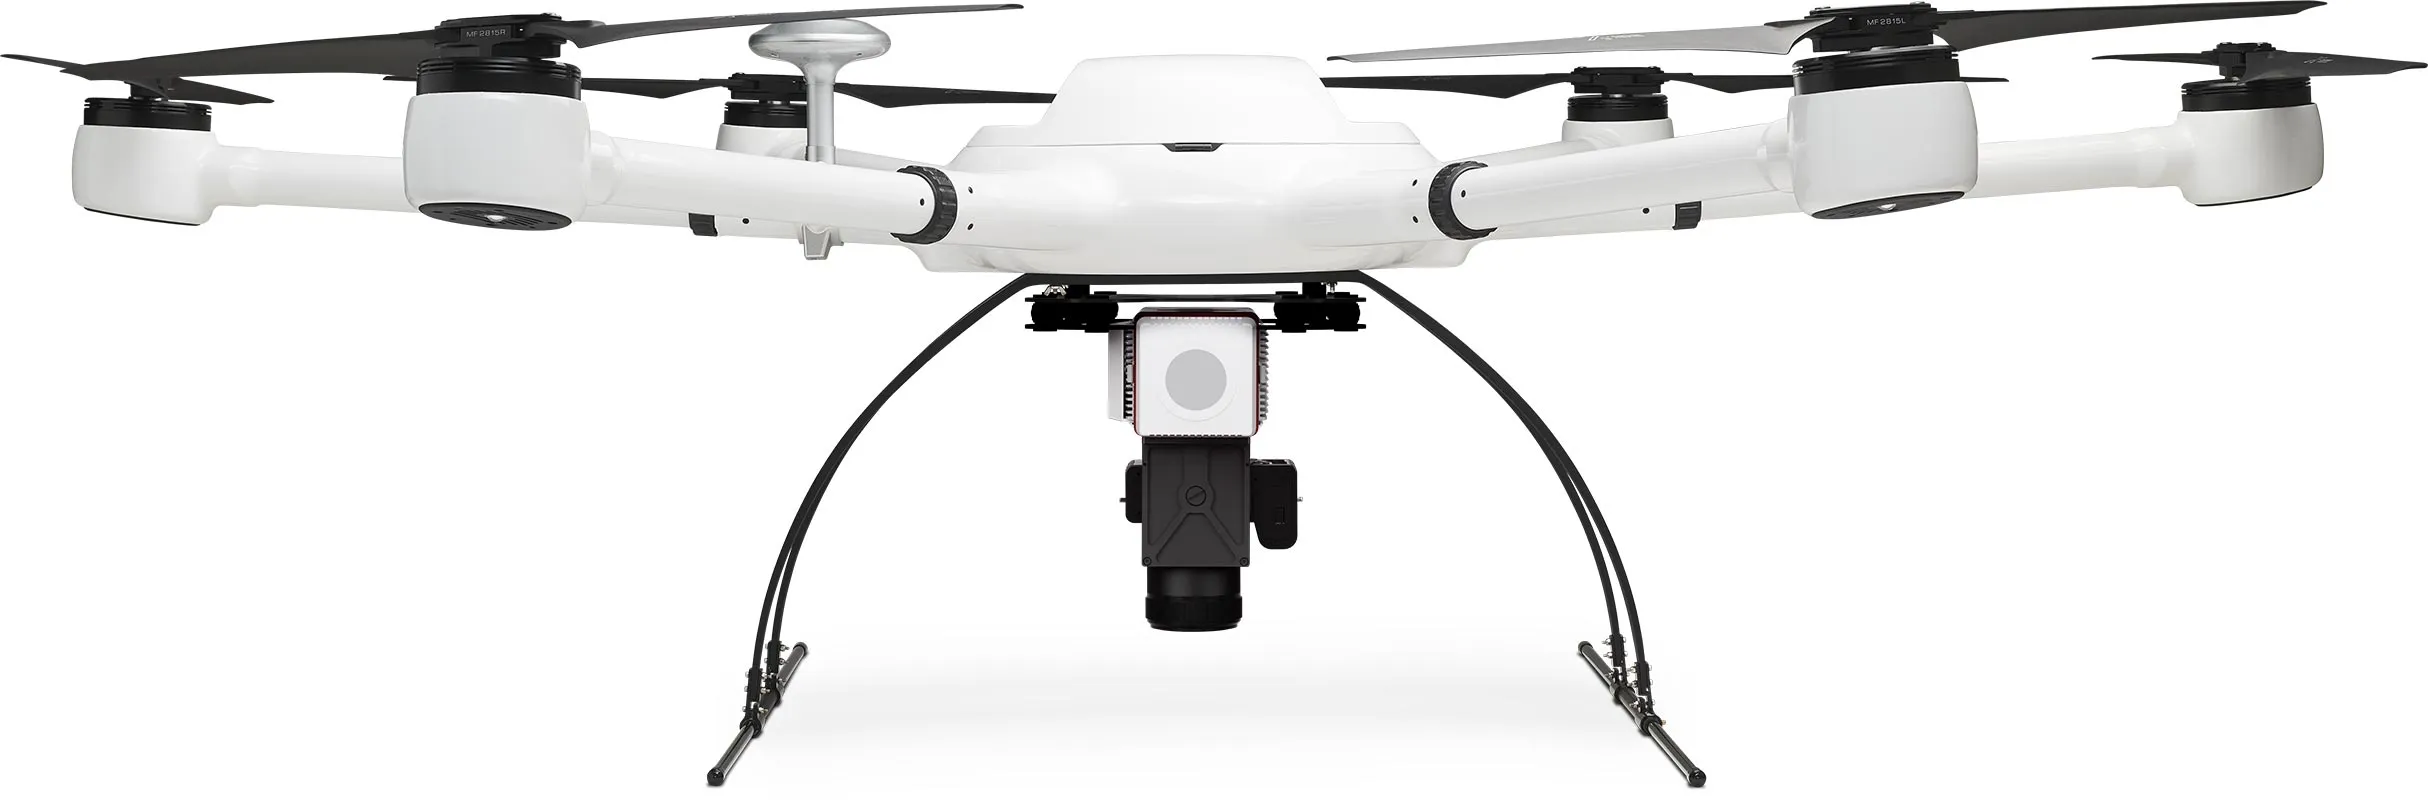 Exabotix Atlas LiDAR Drone industriel Vue de face avec scanner LiDAR et caméra combinés pour des scans 3D précis en couleurs réelles et des tâches de mapping.